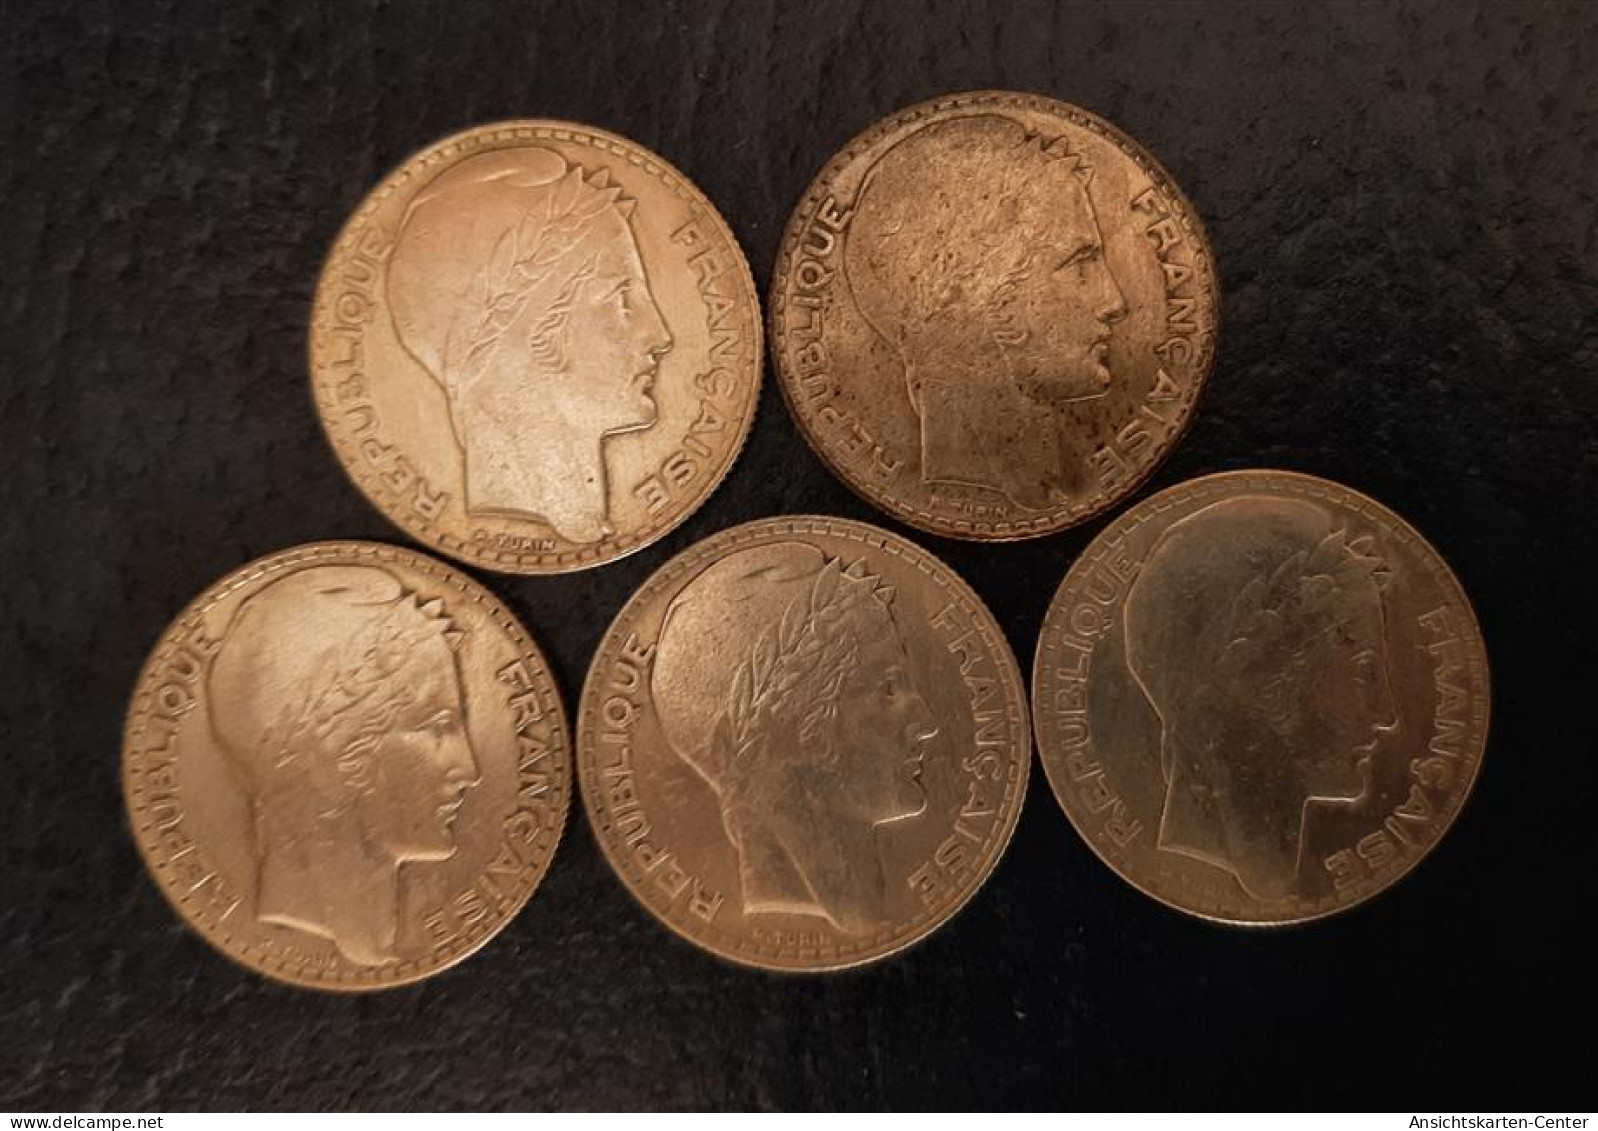 13707507 - Frankreich 5 X 10 Francs Bis 1933 Feinheit 680/1000 Silber Feingewicht 34 G - Coins (pictures)